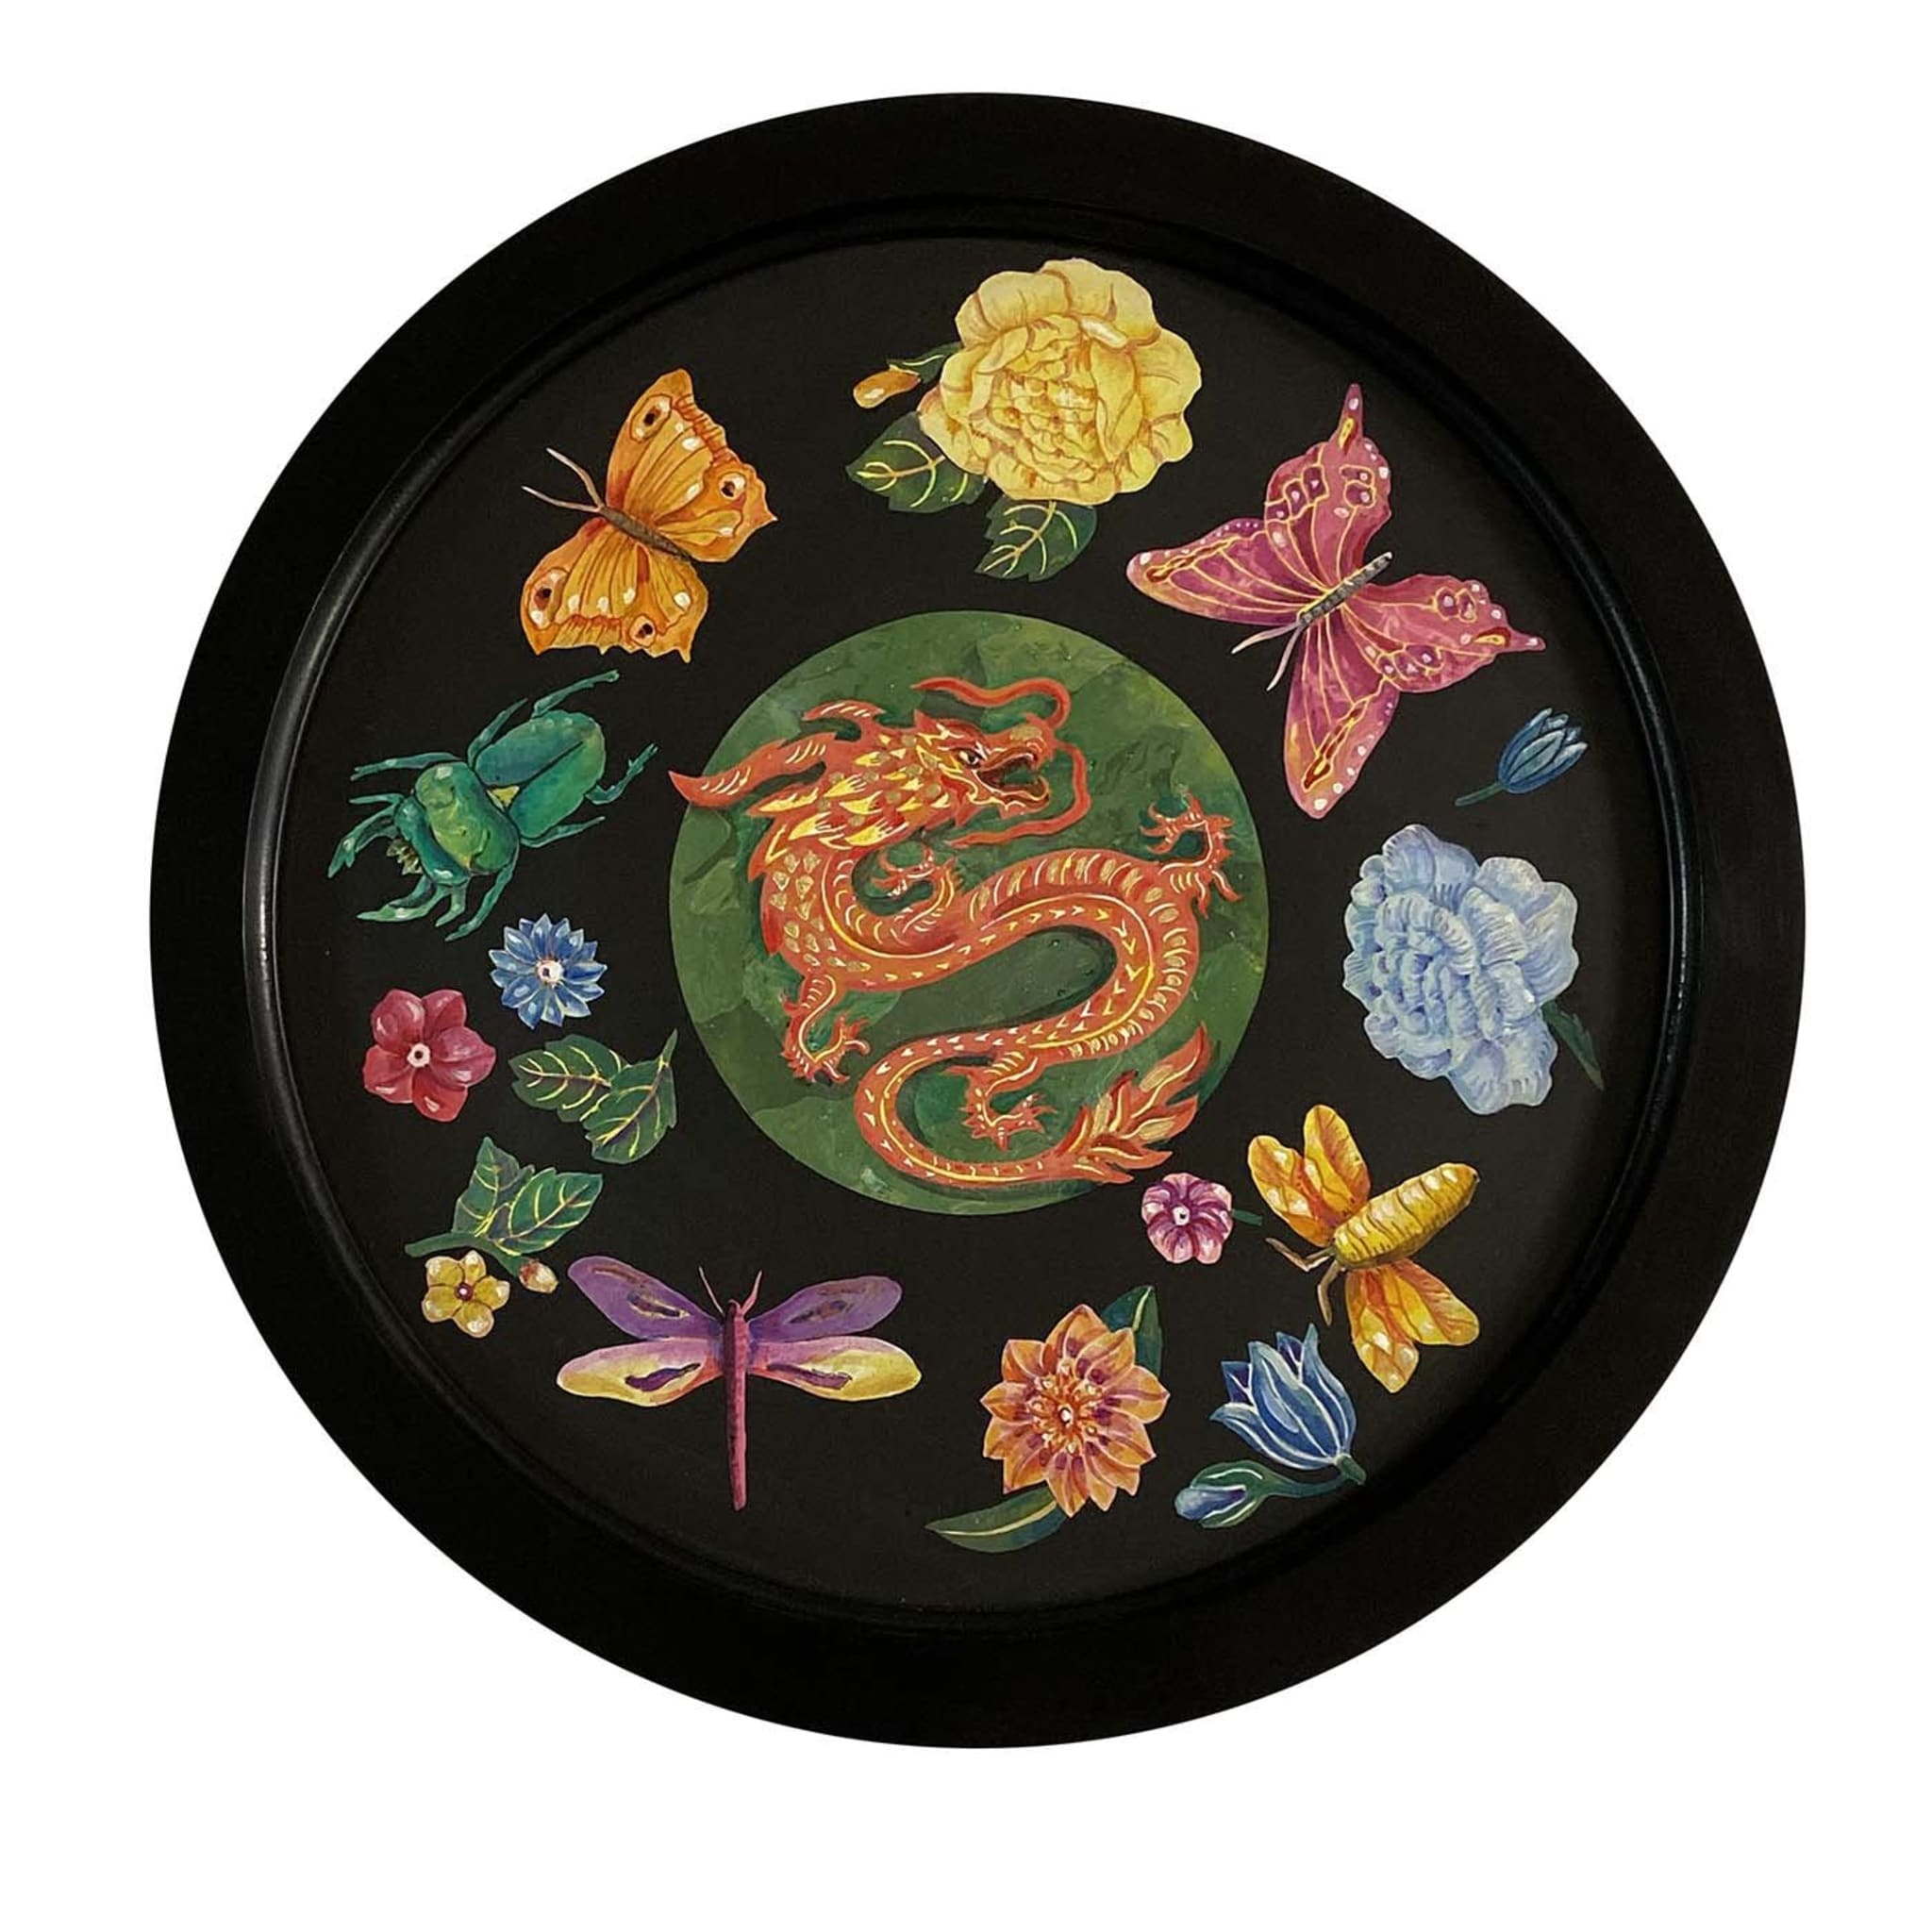 Scagliola peint un dragon avec des fleurs et des insectes  - Vue principale